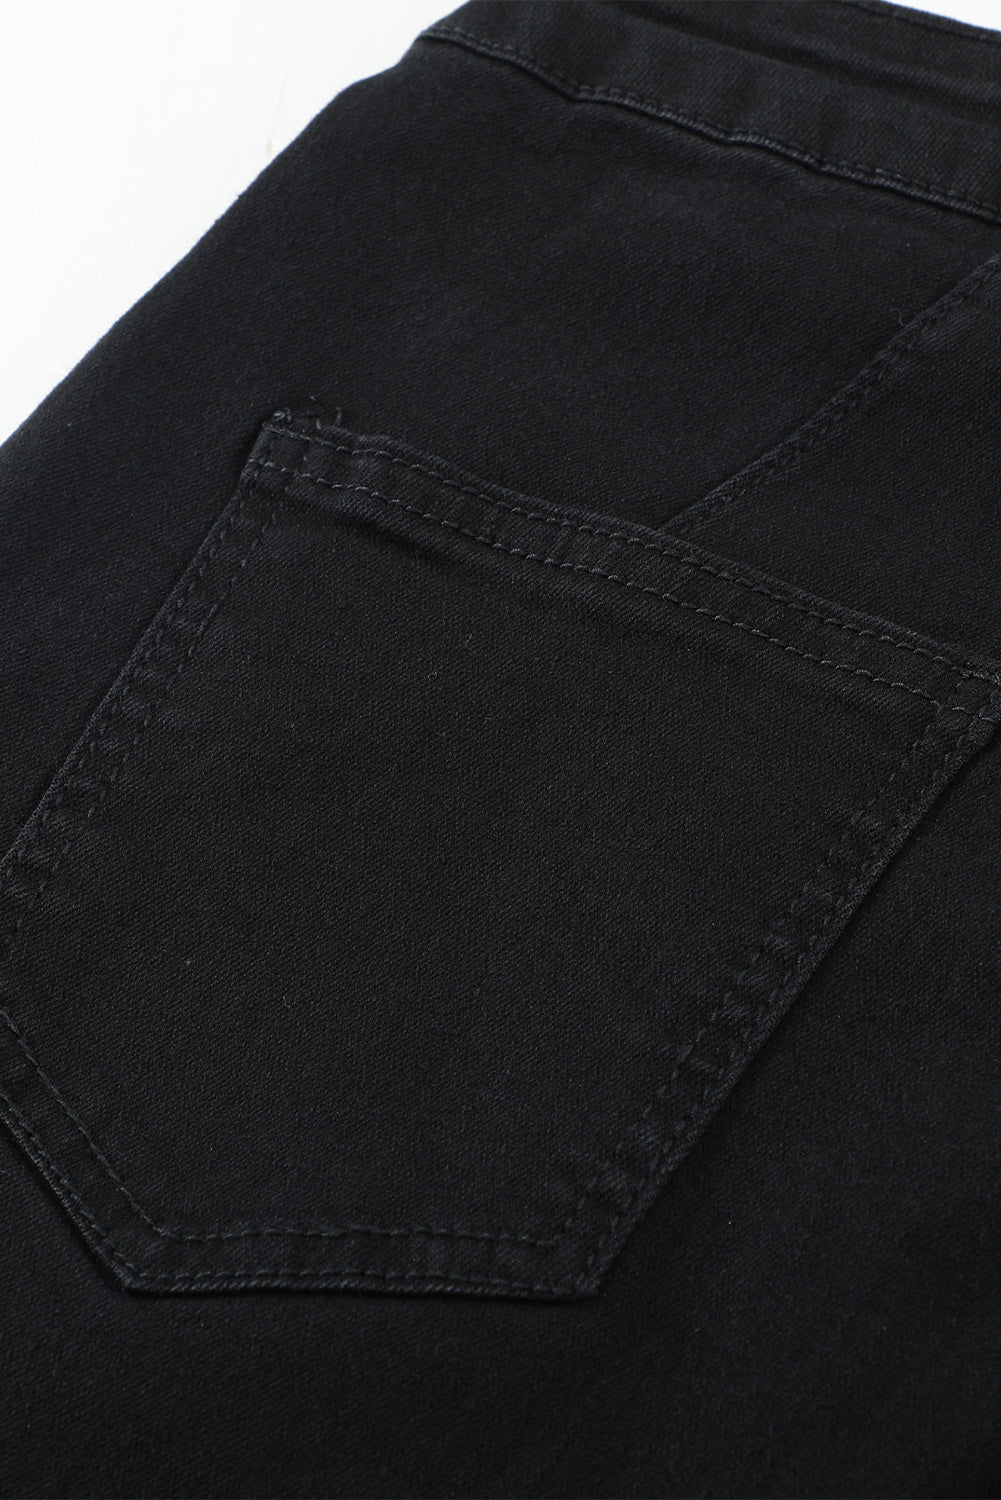 Black High Waist Pockets Bell Jeans Jeans JT's Designer Fashion